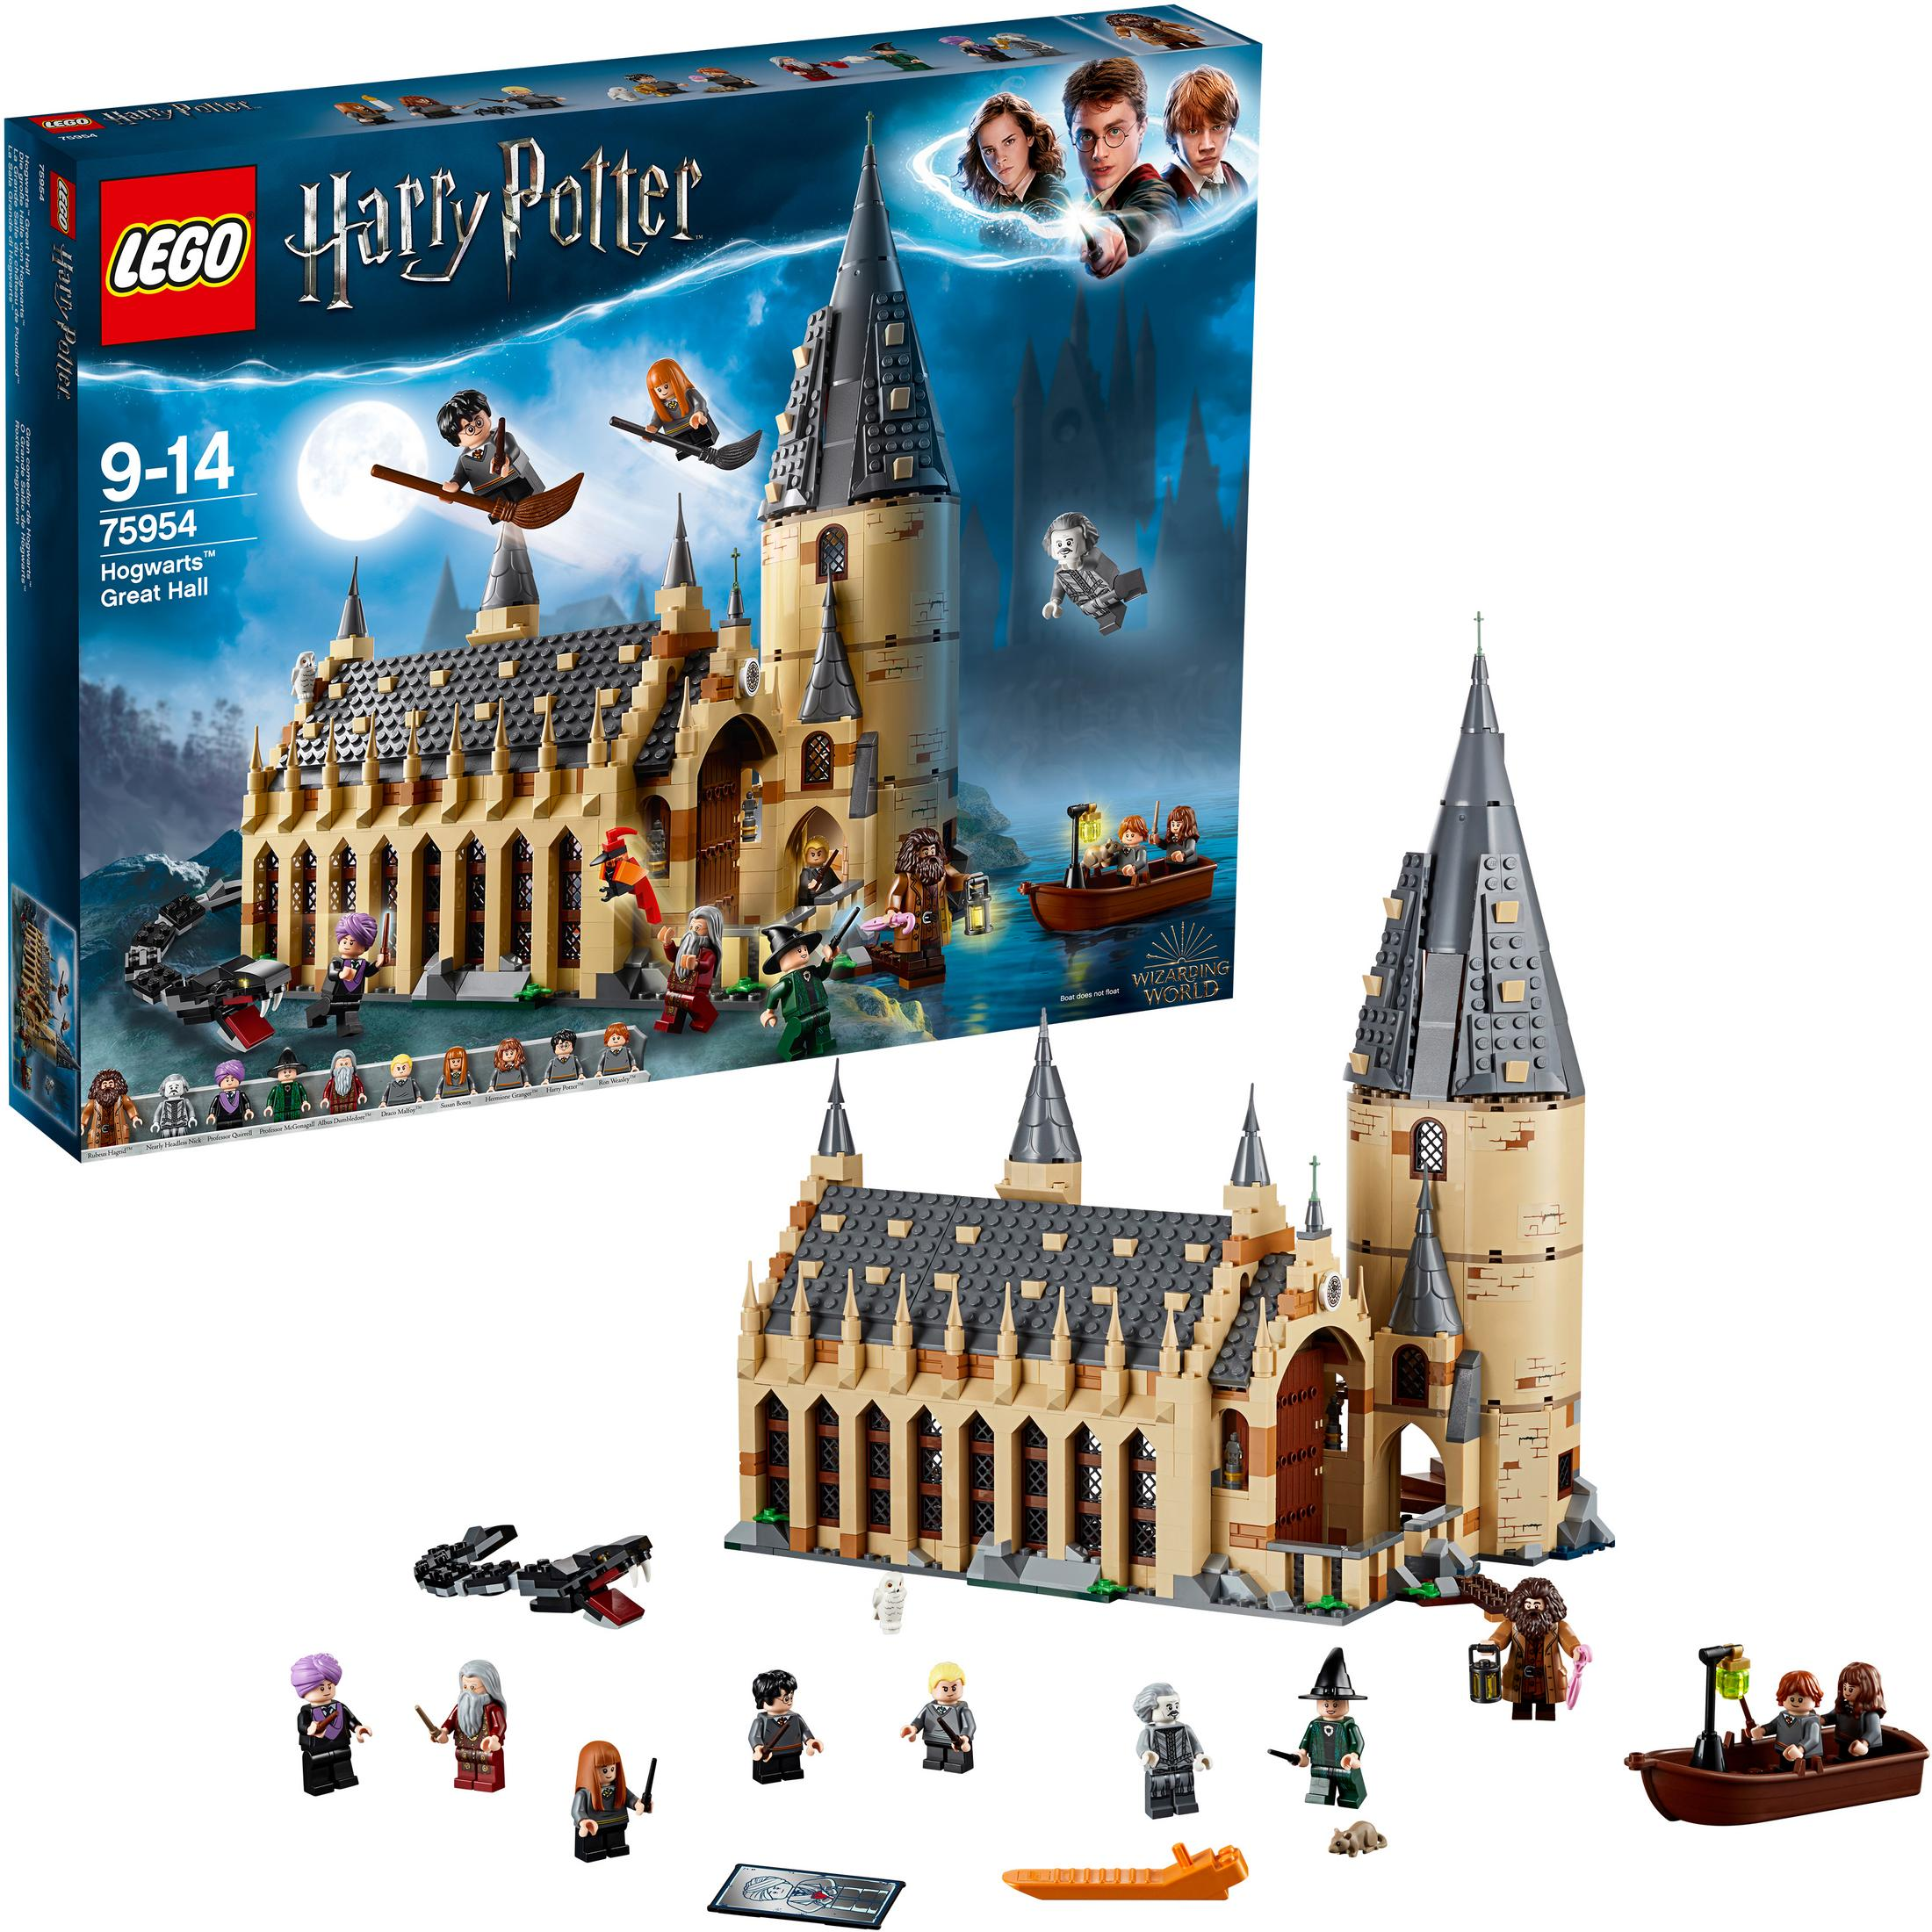 75954 LEGO GROSSE HALLE VON DIE Bausatz HOGWARTS